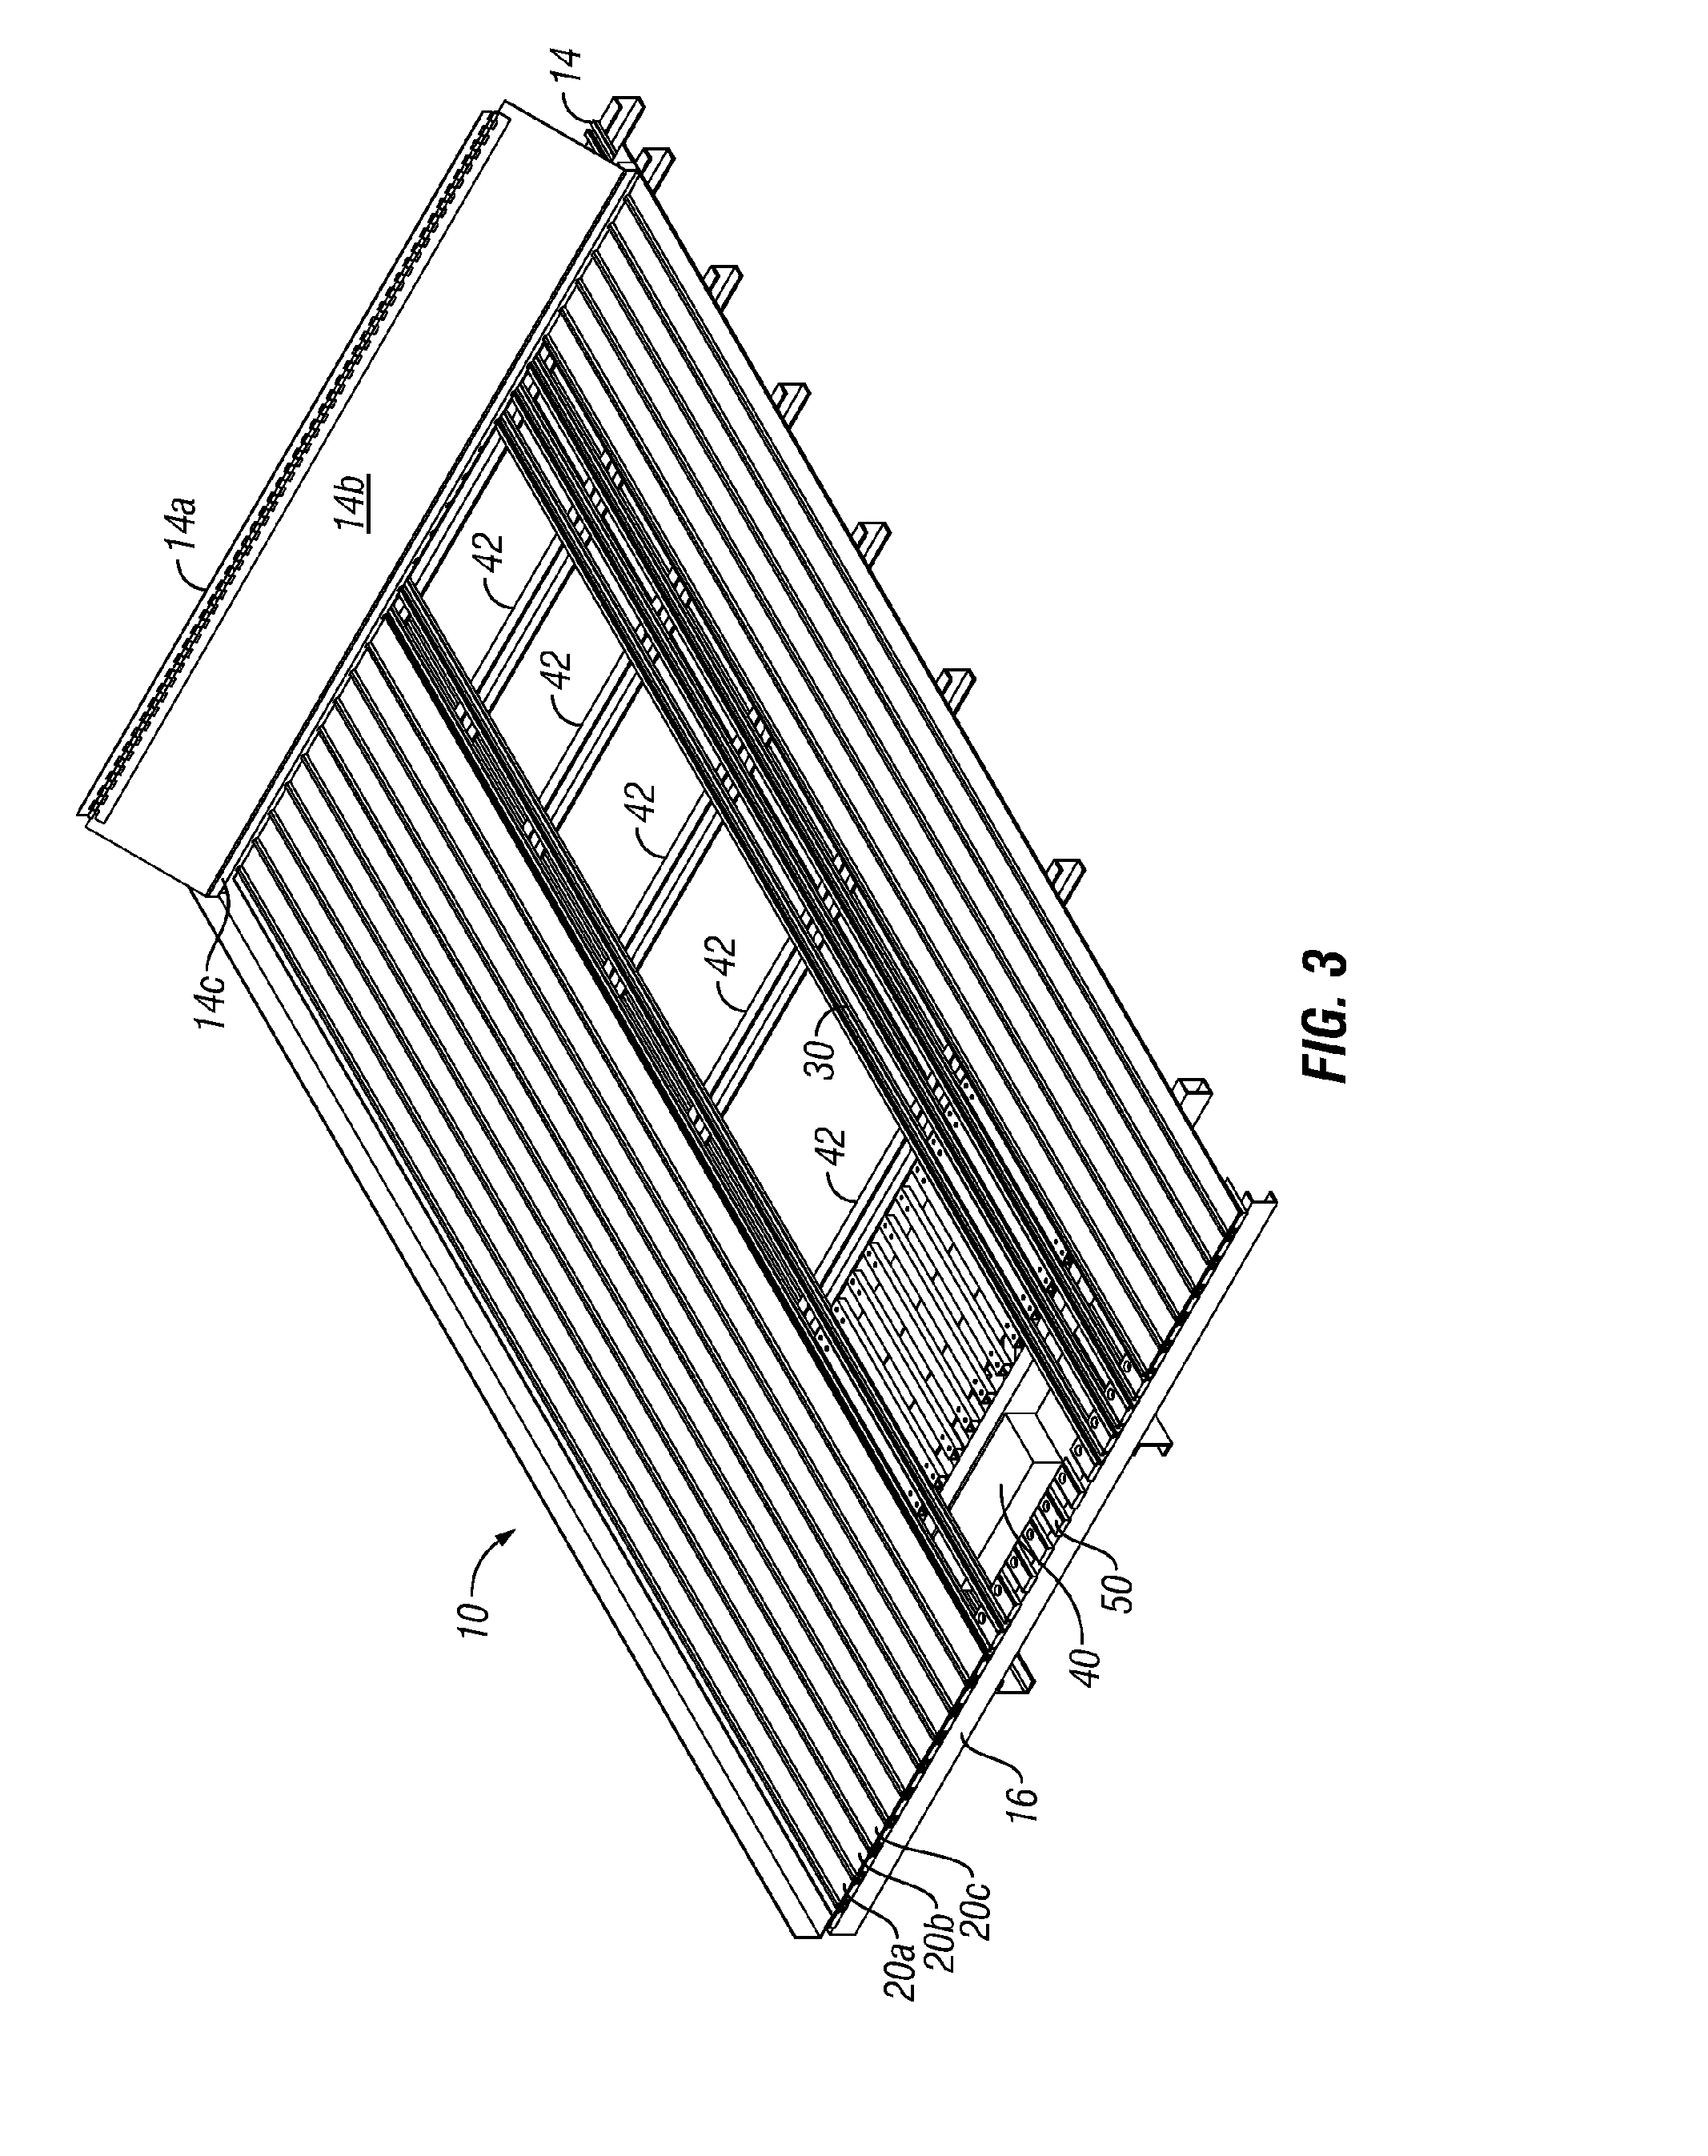 Bearingless Reciprocating Slat-Type Conveyor Assemblies